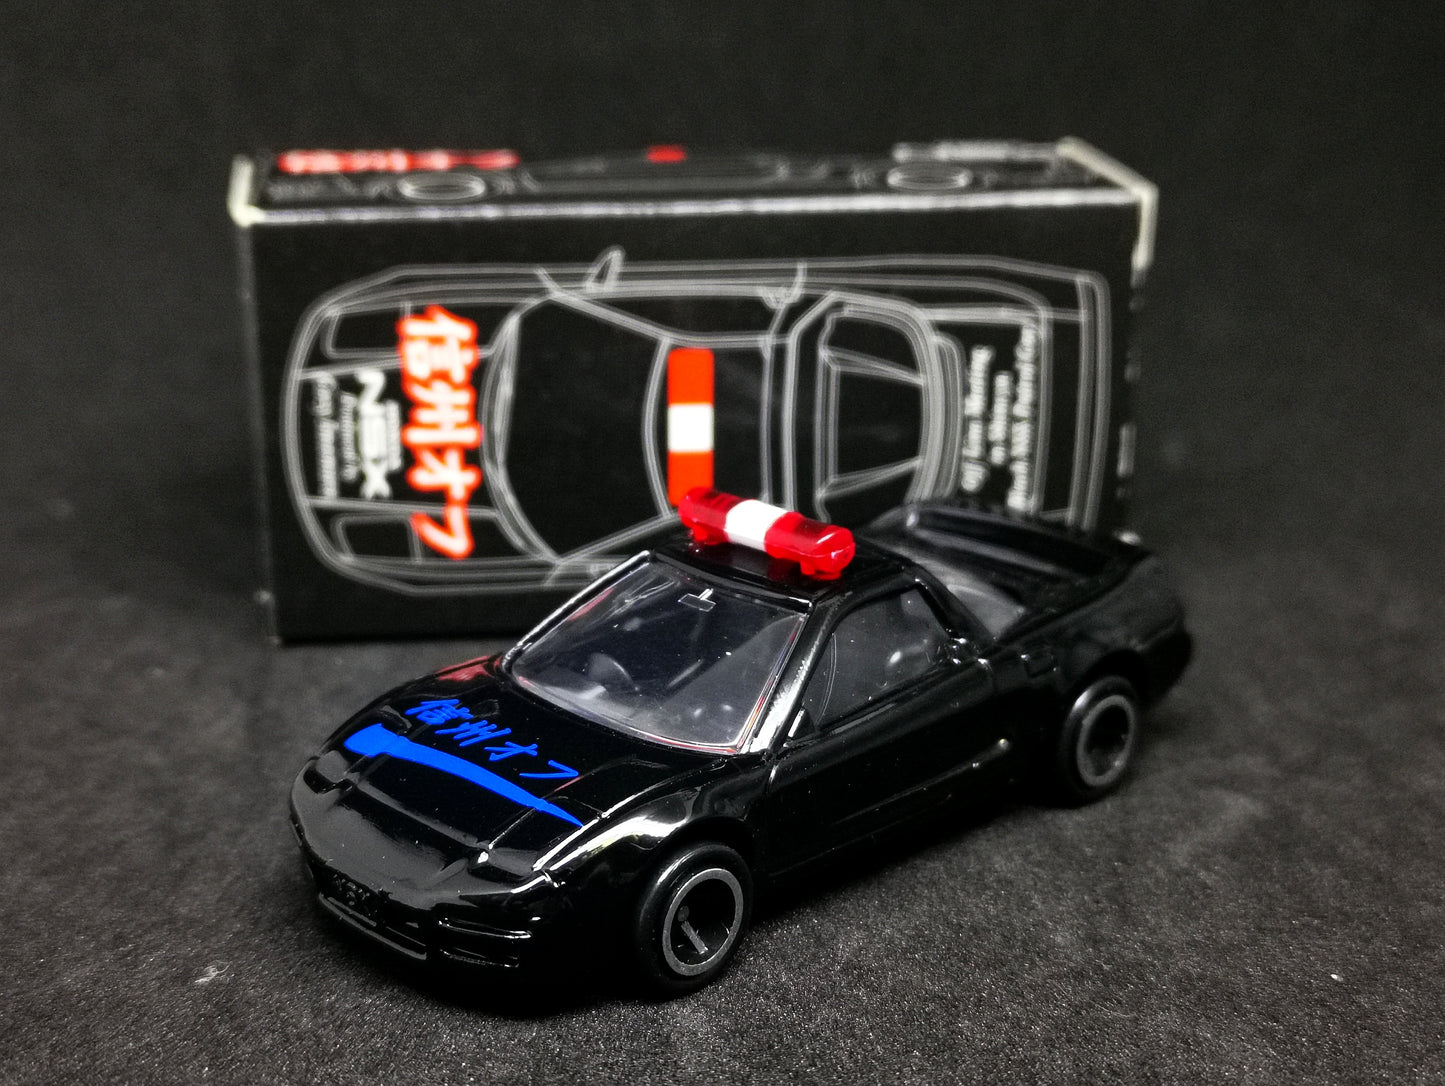 Tomica Honda NSX Black Patrol Car 信州オフ Imamura version limited edition